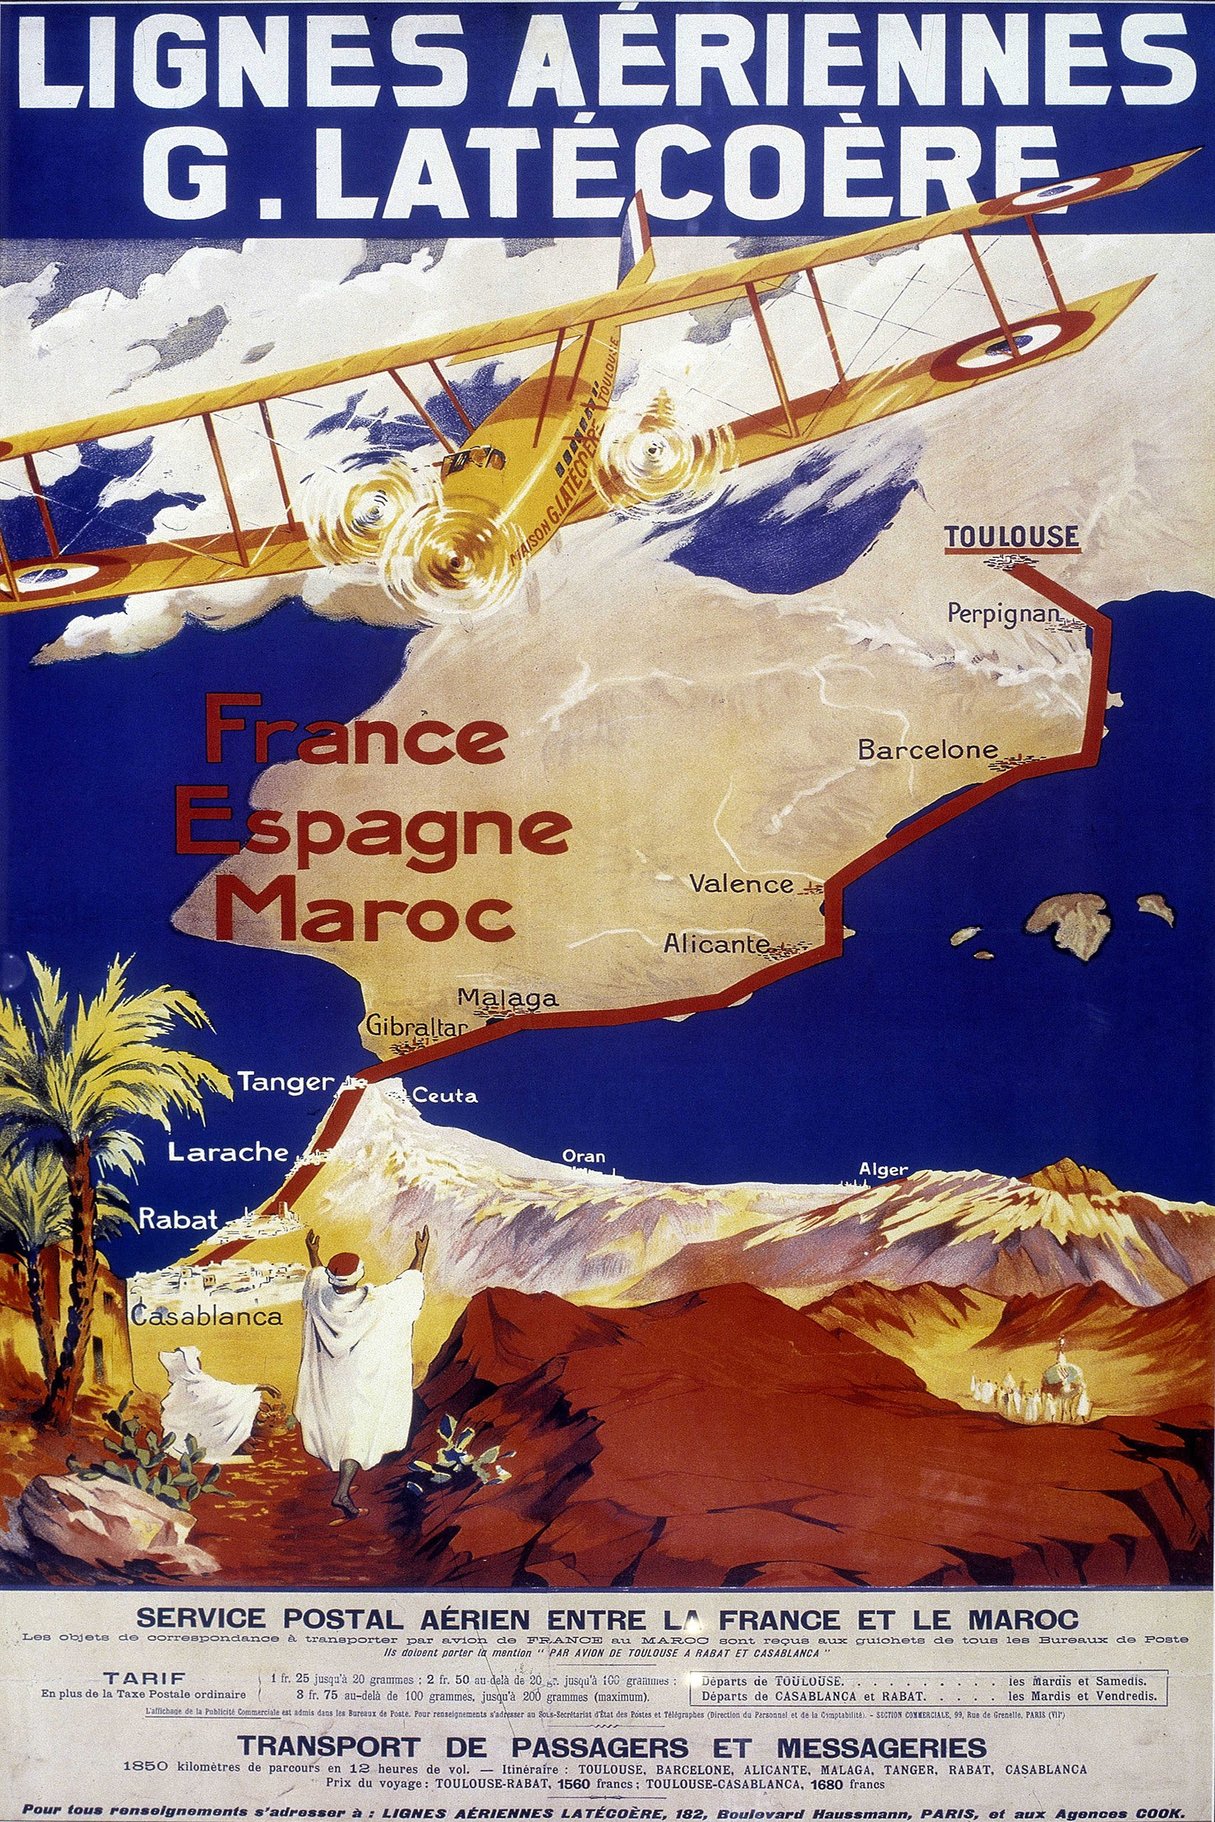 Affiche publicitaire pour les lignes aériennes de Latècoère reliant la France, l'Espagne et le Maroc. &copy; Leonard de Selva/Bridgeman Image